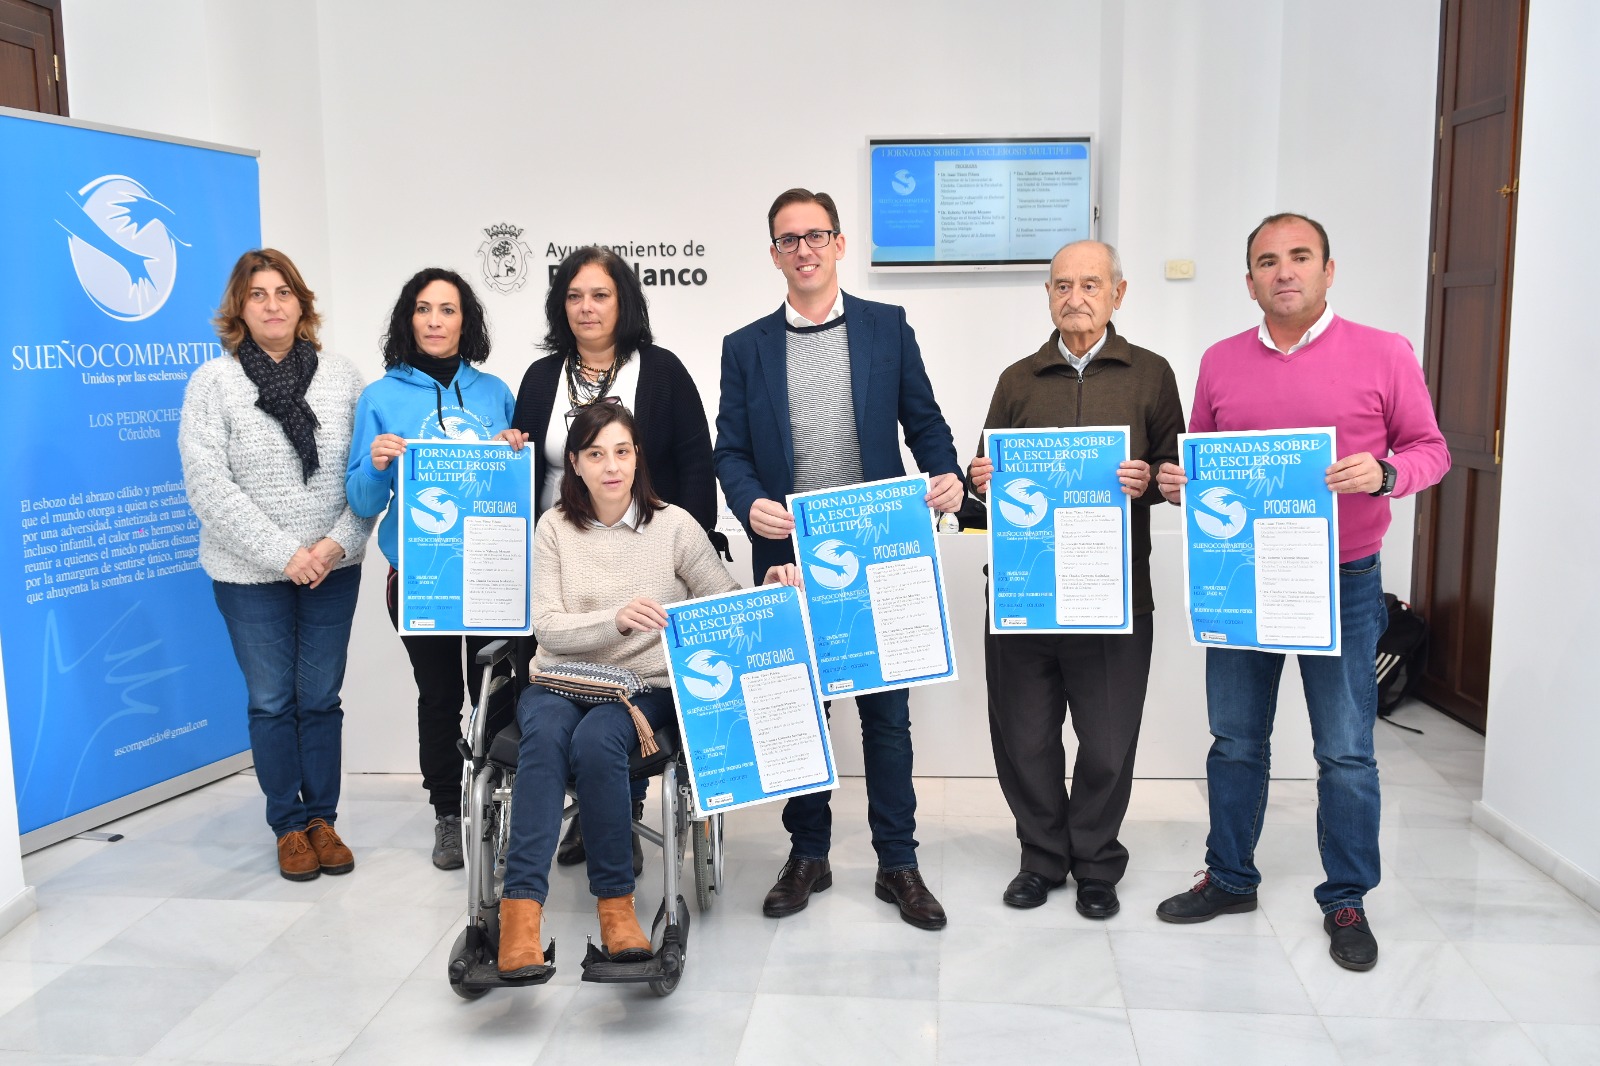 Profesionales en la investigación de la Esclerosis Múltiple estrenan las primeras jornadas sobre la enfermedad en Pozoblanco 1